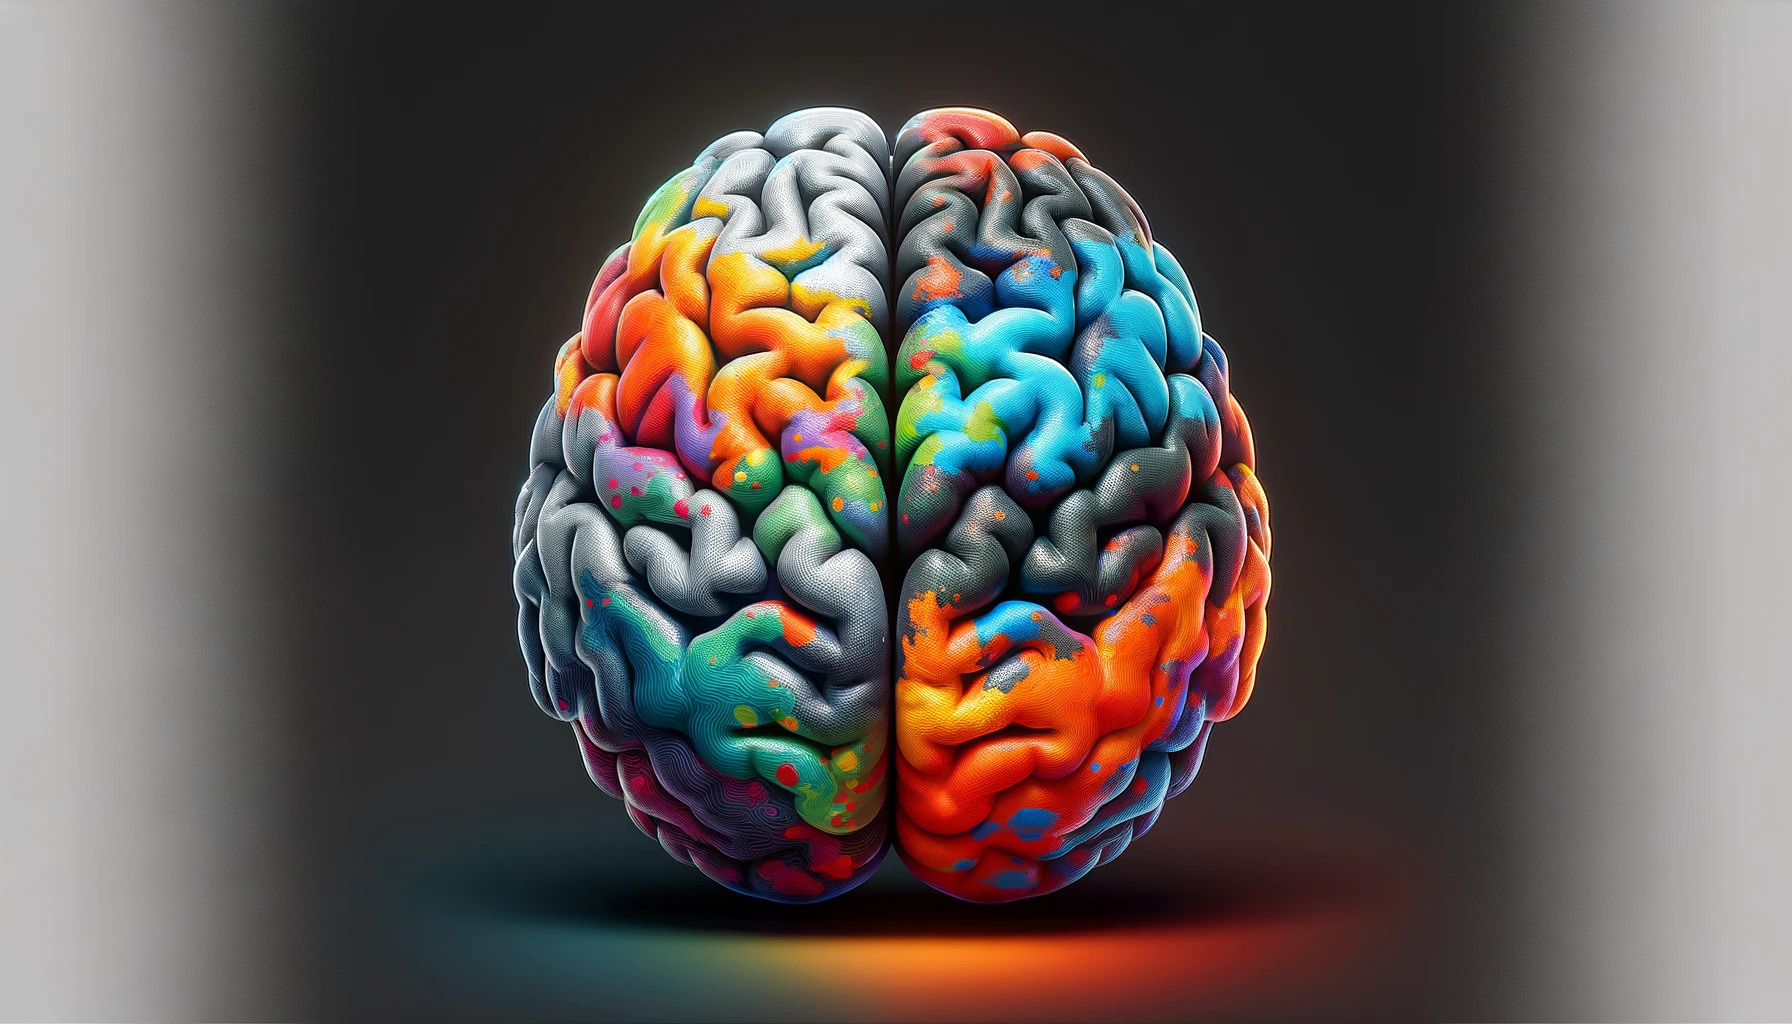 Représentation d'un cerveau avec des zones en gris et en couleurs vives, illustrant l'impact de la dépression sur certaines régions cérébrales et la santé mentale en général